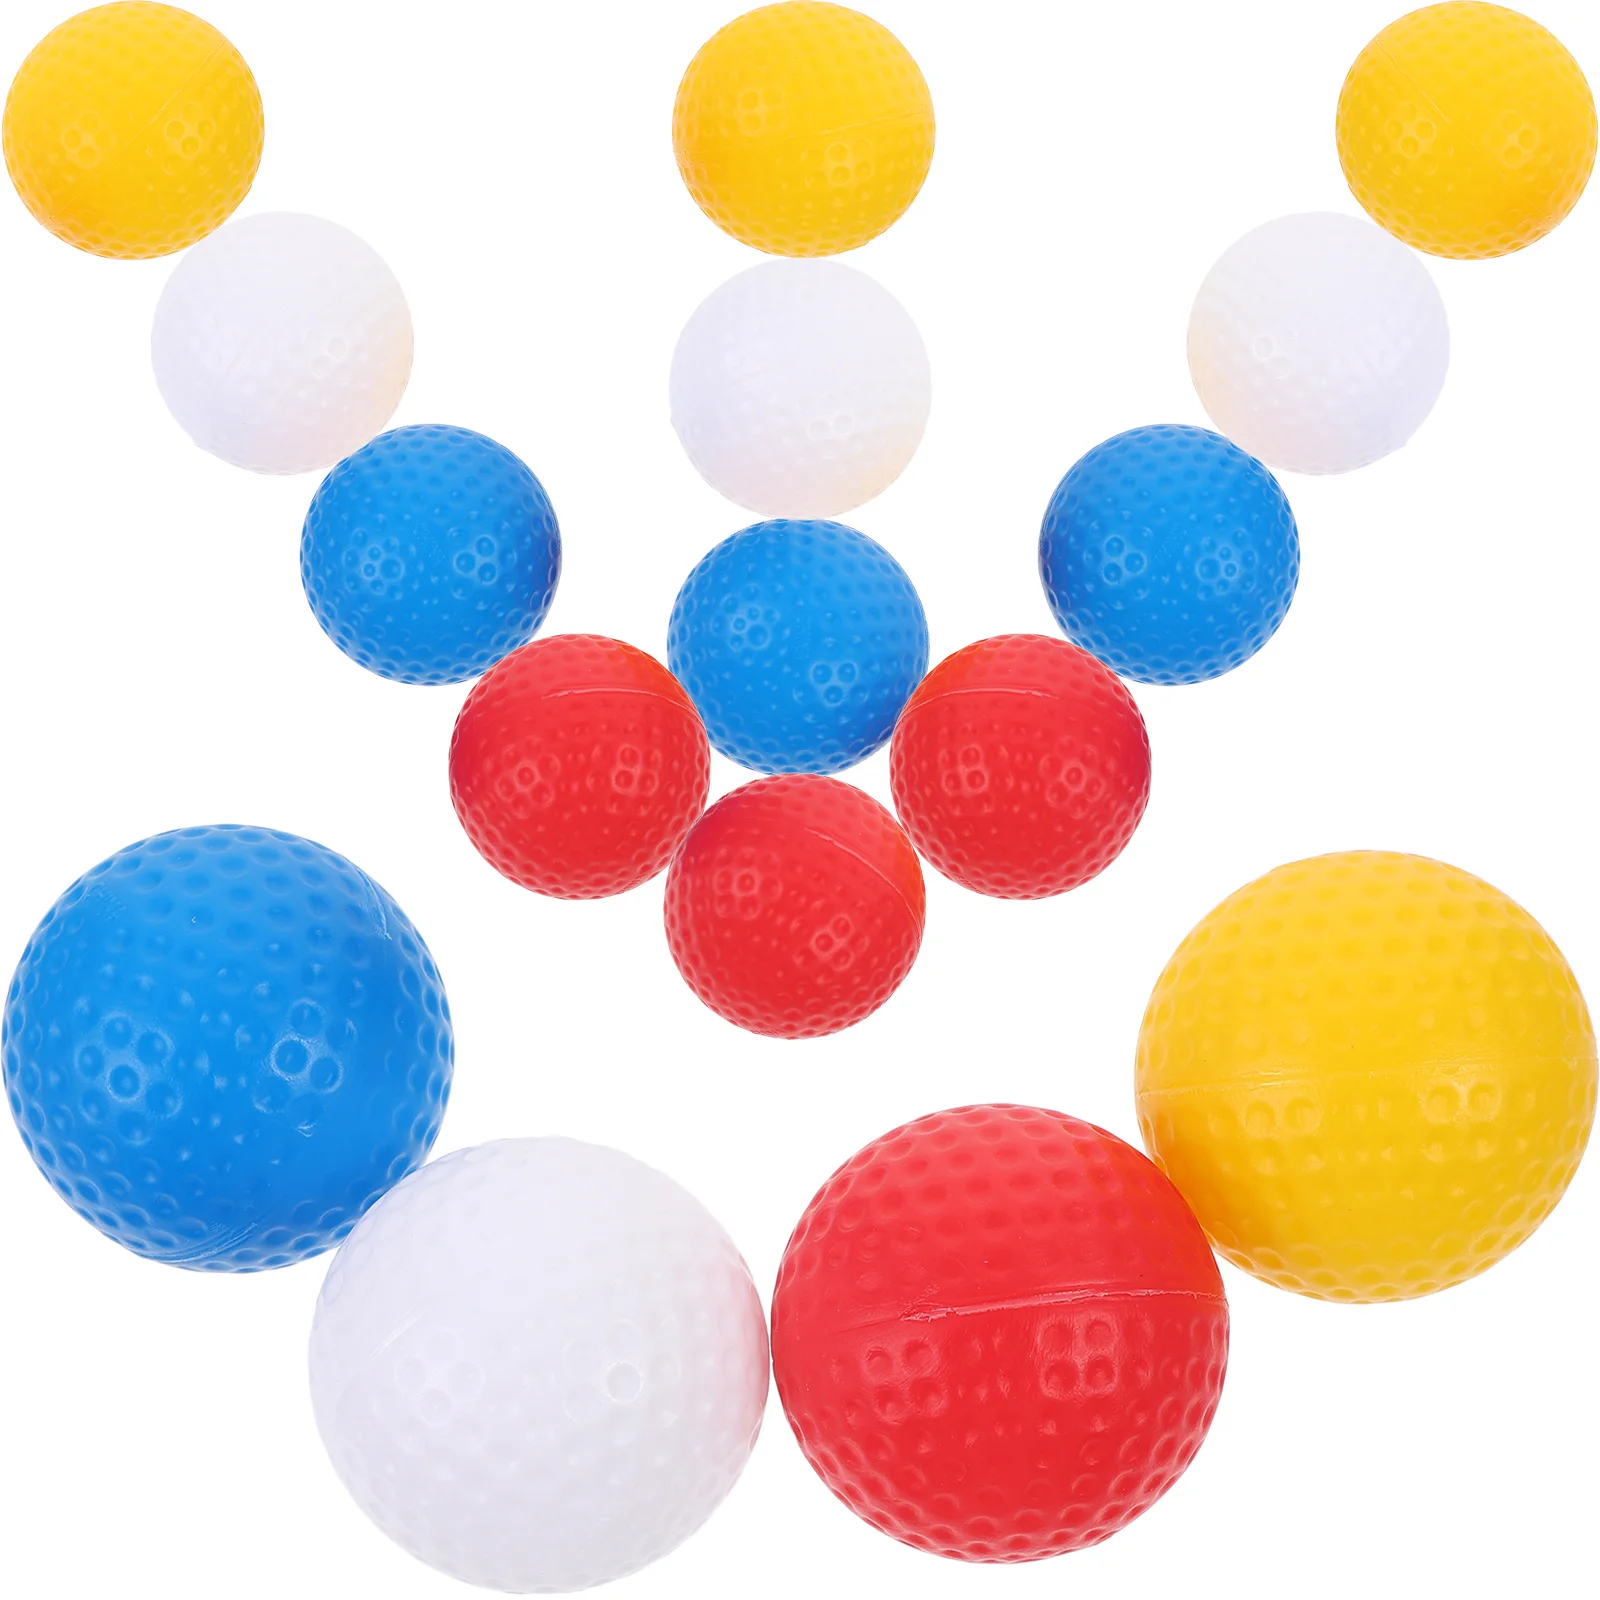 Мячи для игры в гольф, Цветные мячи для гольфа, маленькие мячи для гольфа, портативные мячи для игры в гольф 10 шт пластиковые мячи для гольфа диаметром 41 мм